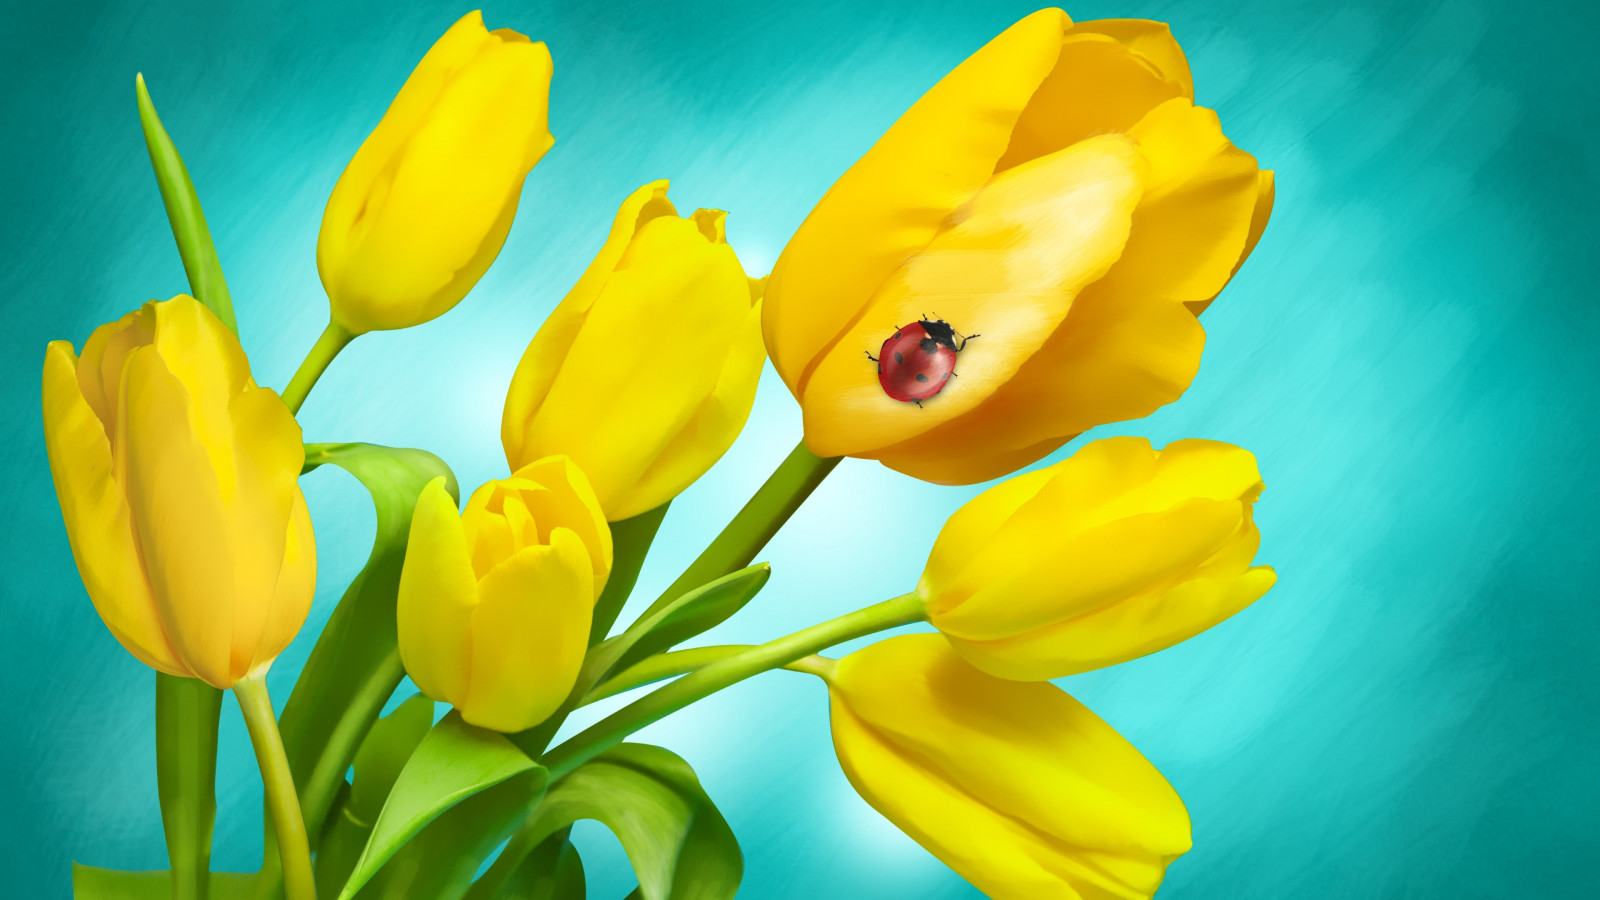 Ladybird on yellow tulips wallpaper 1600x900